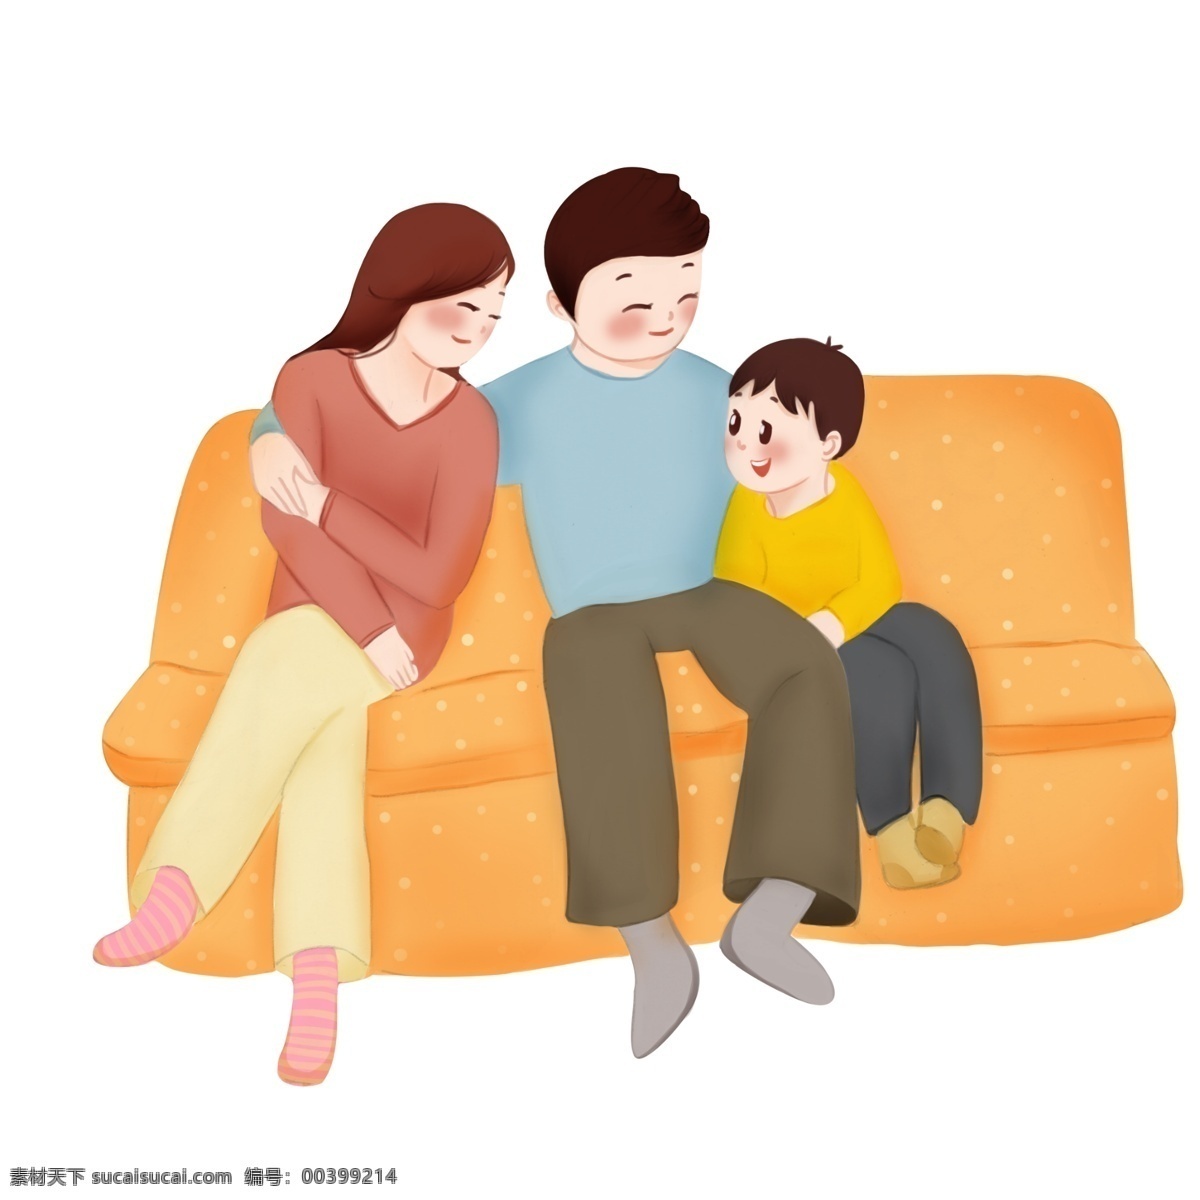 手绘 团聚 拥抱 插画 幸福的一家人 卡通插画 黄色的沙发 慈祥的父母 抱 一起 家人 手绘团聚插画